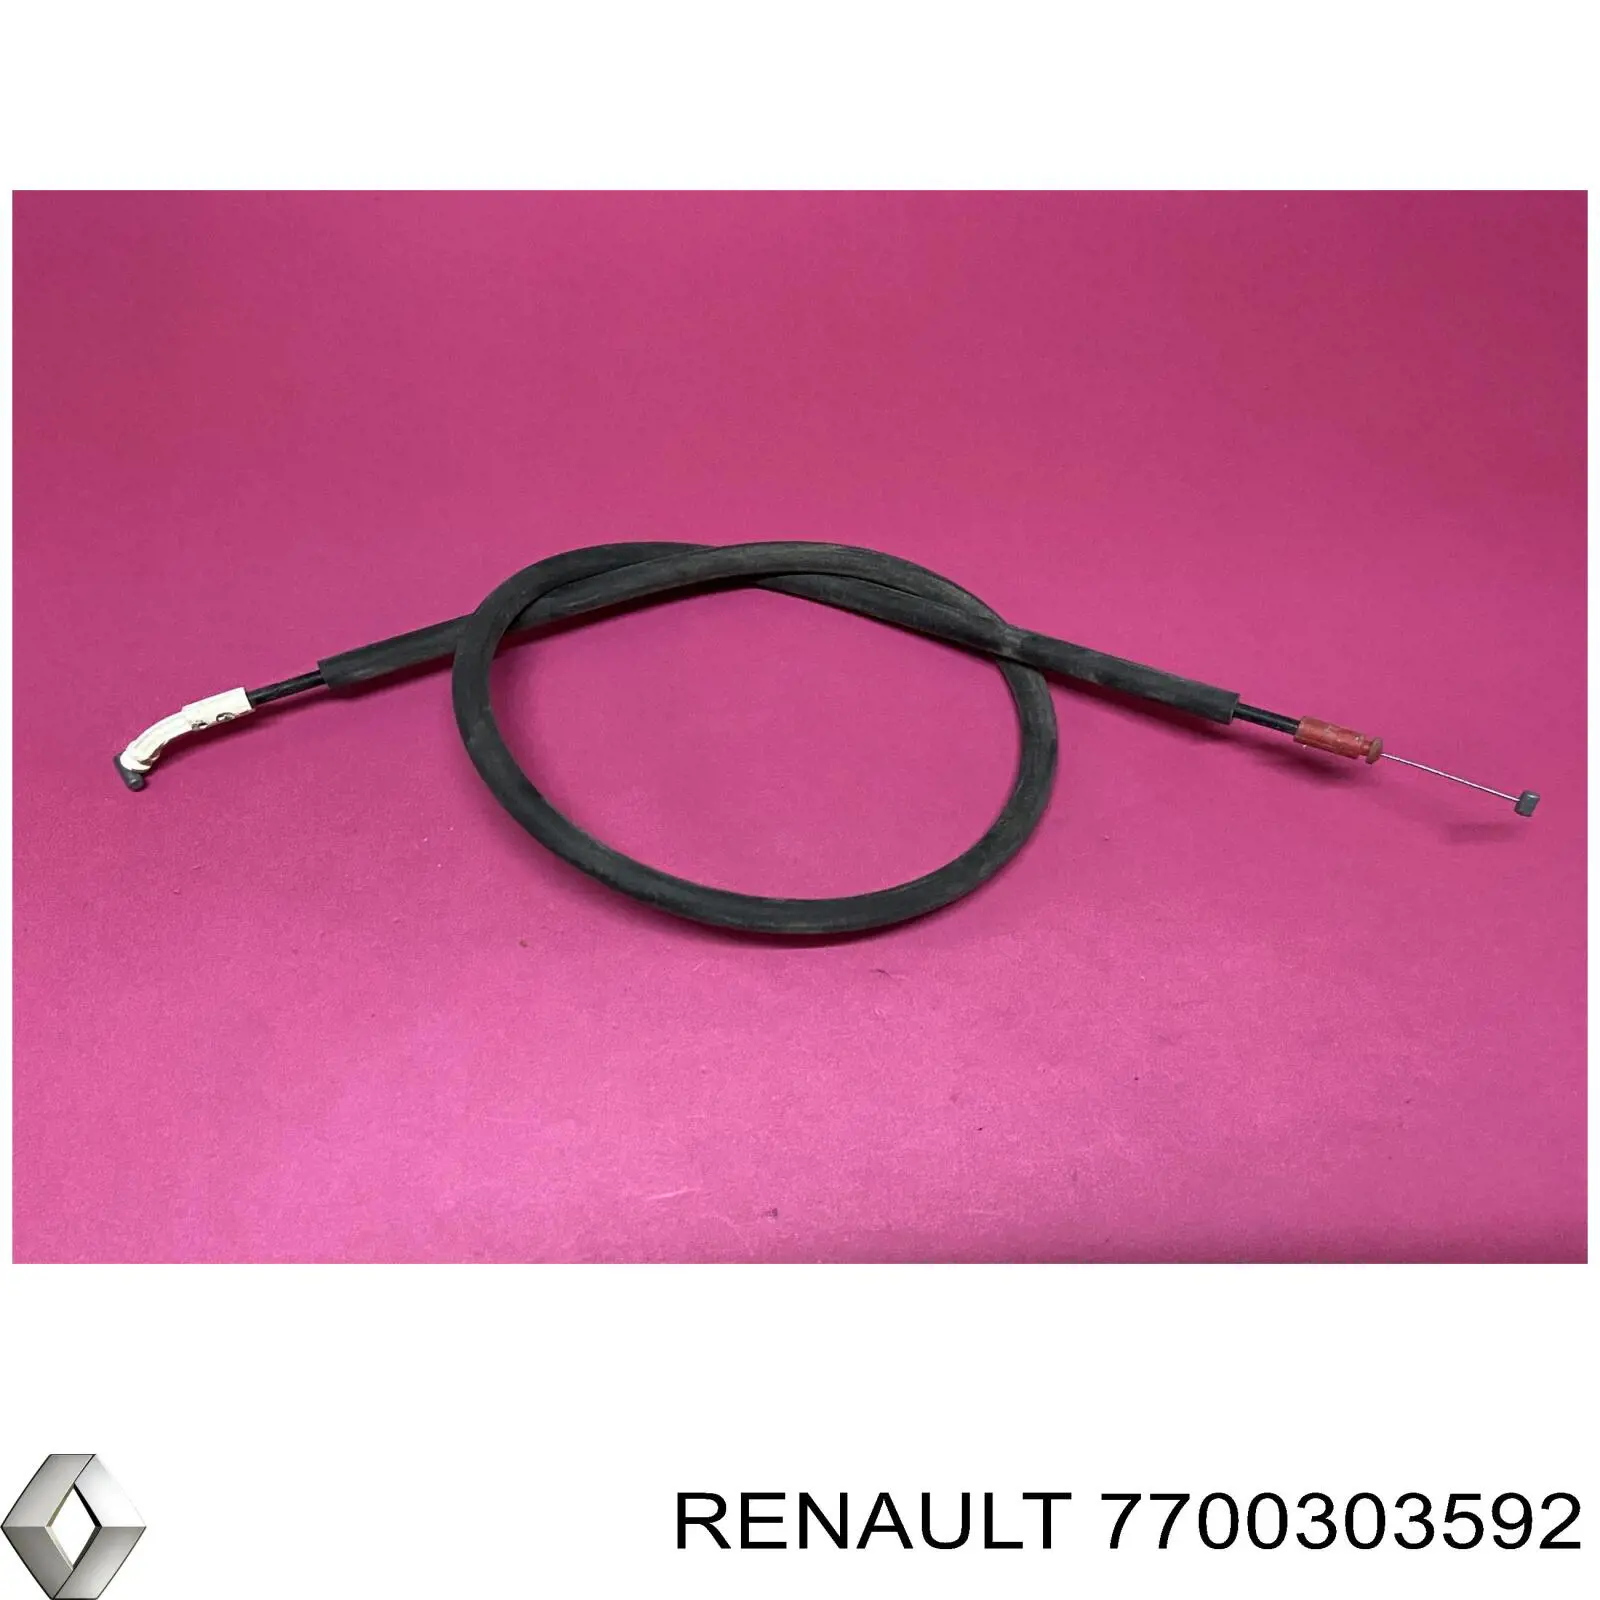 7700303592 Renault (RVI) cable de accionamiento, desbloqueo de puerta trasera derecha